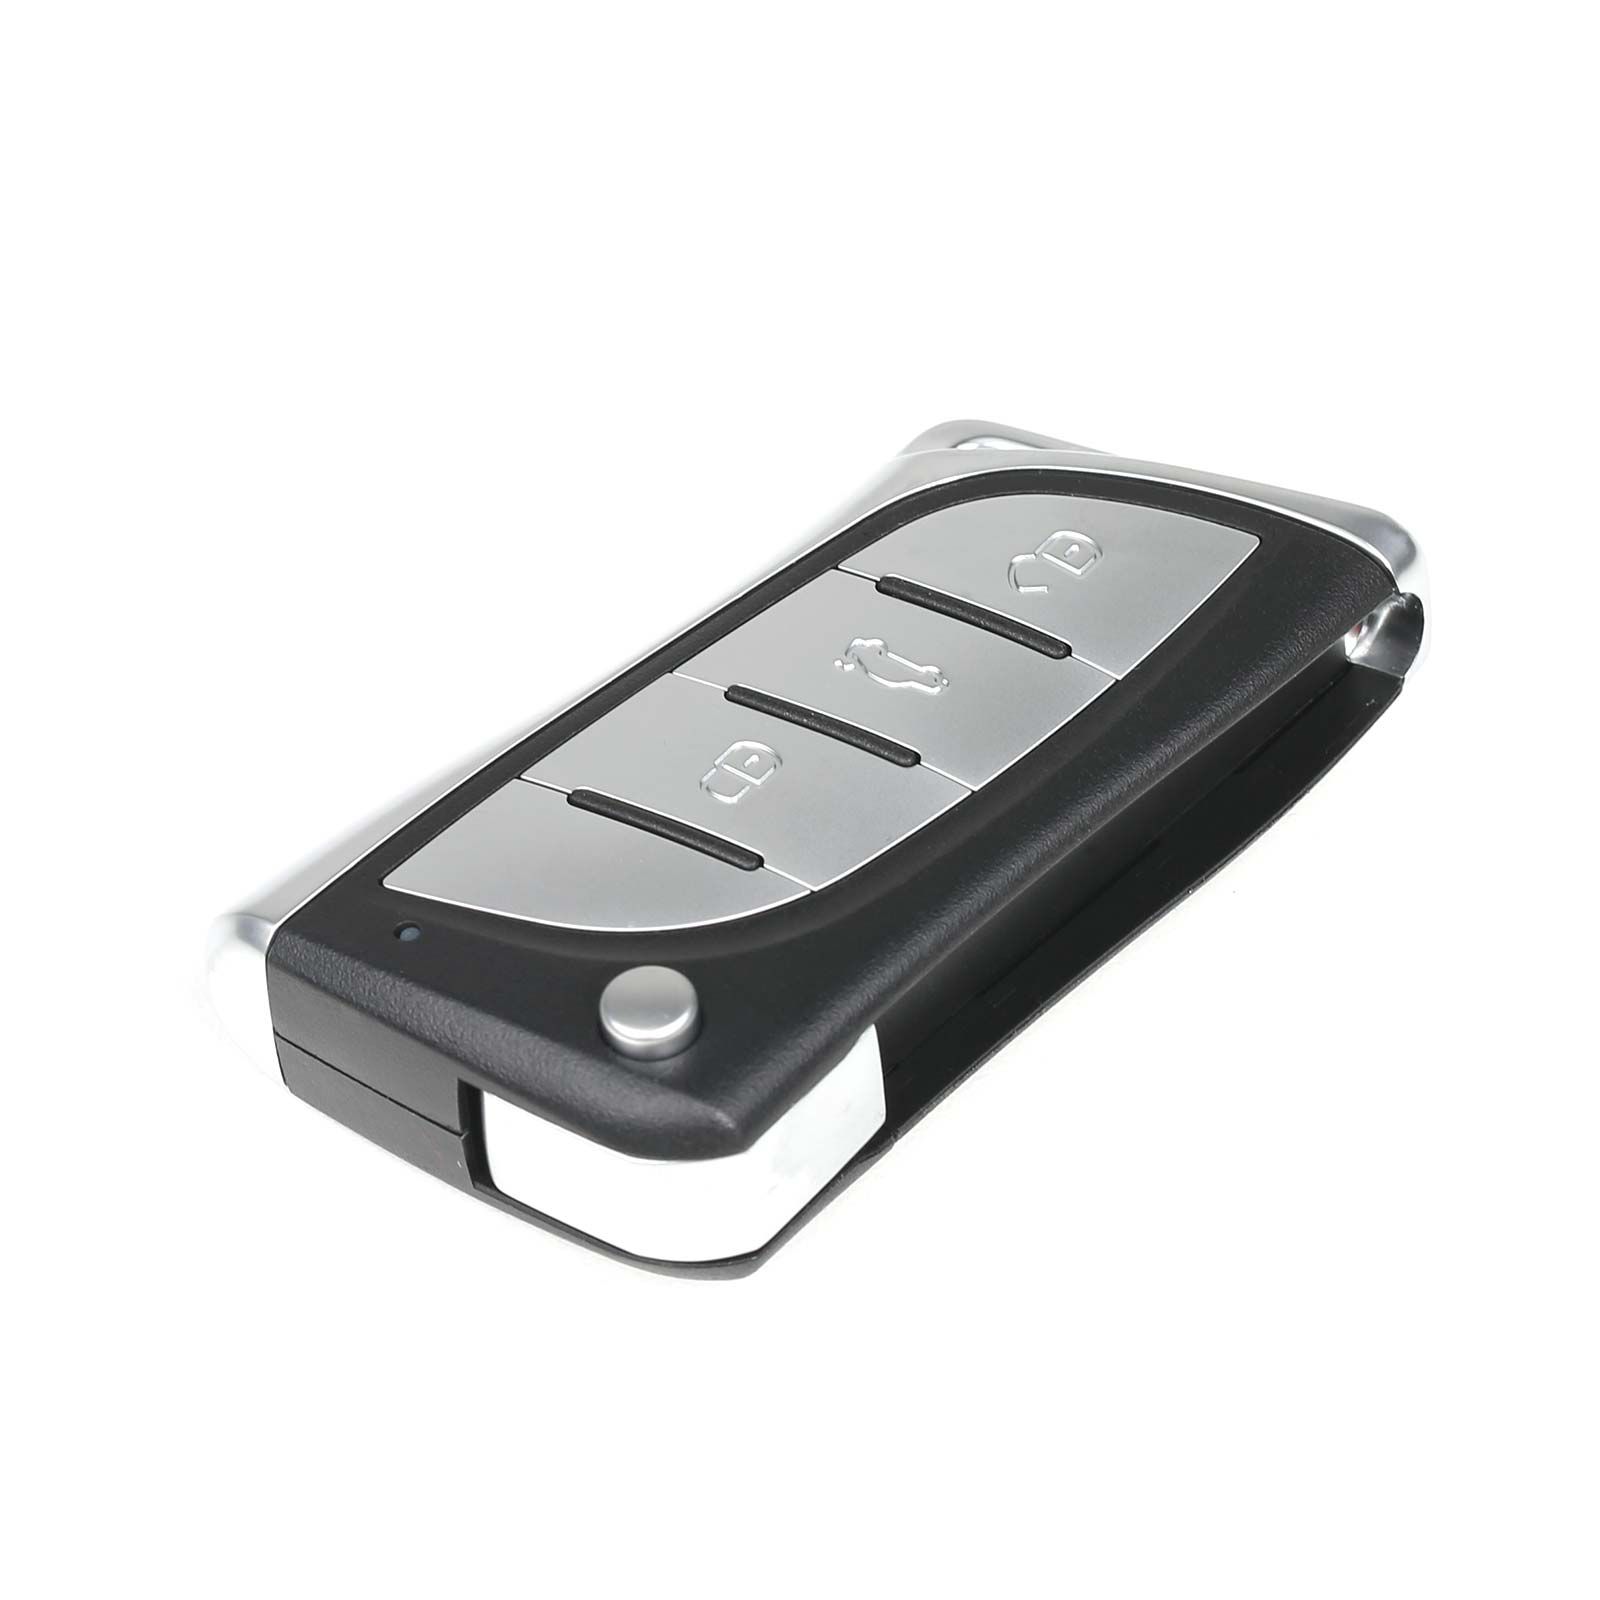 Xhorse XKLEX0EN Wire Remote Key for Lexus 5pcs/lot